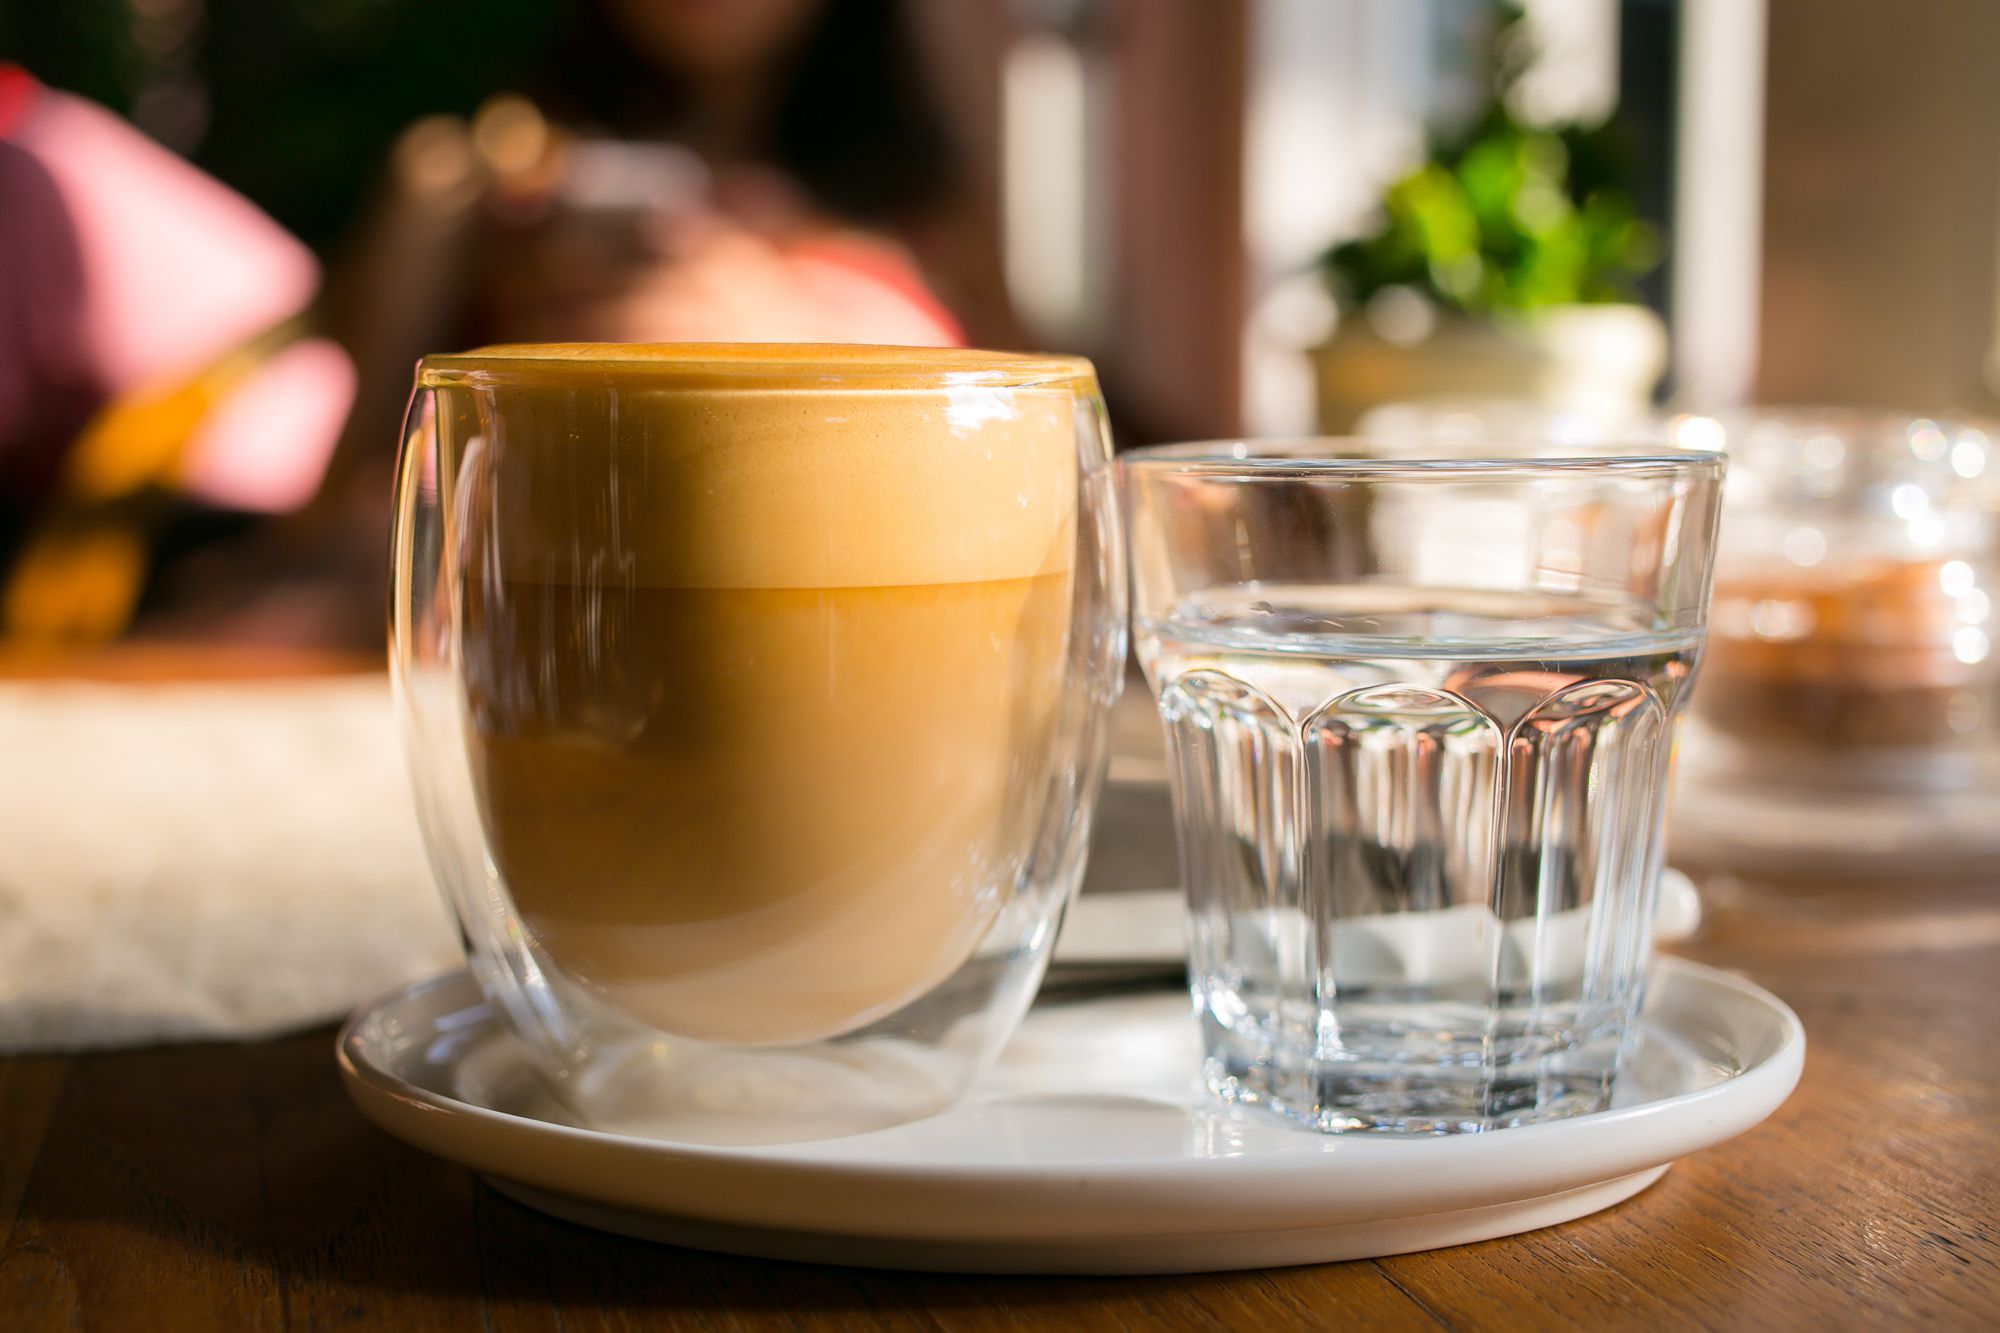 Se cree que la tradición del vaso de agua nació en Italia en el año 1920 con el fin de acompañar el fuerte sabor del reconocido “Espresso”